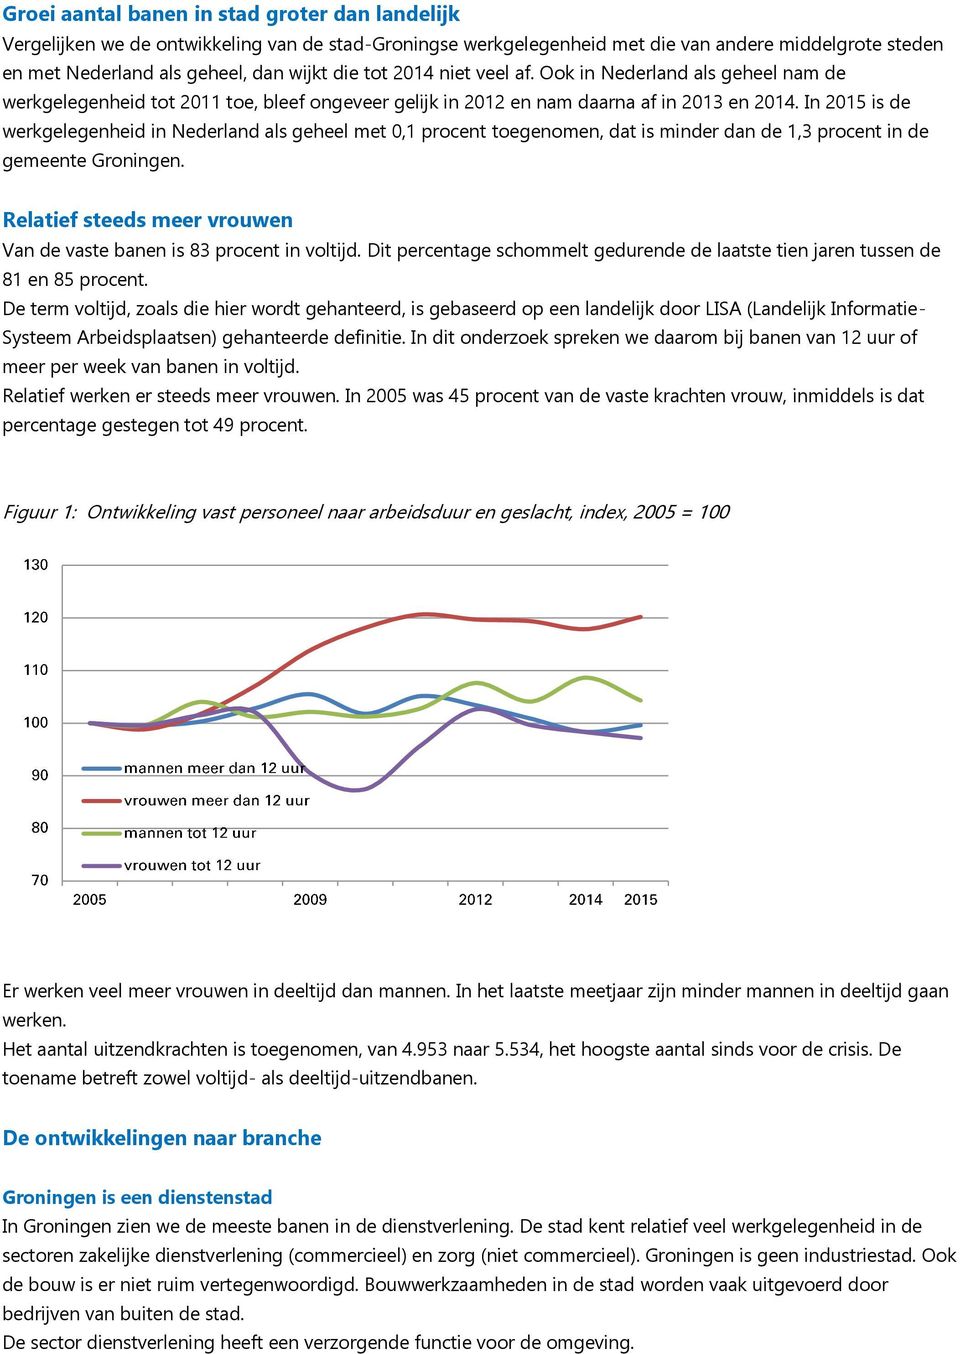 In 2015 is de werkgelegenheid in Nederland als geheel met 0,1 procent toegenomen, dat is minder dan de 1,3 procent in de gemeente Groningen.